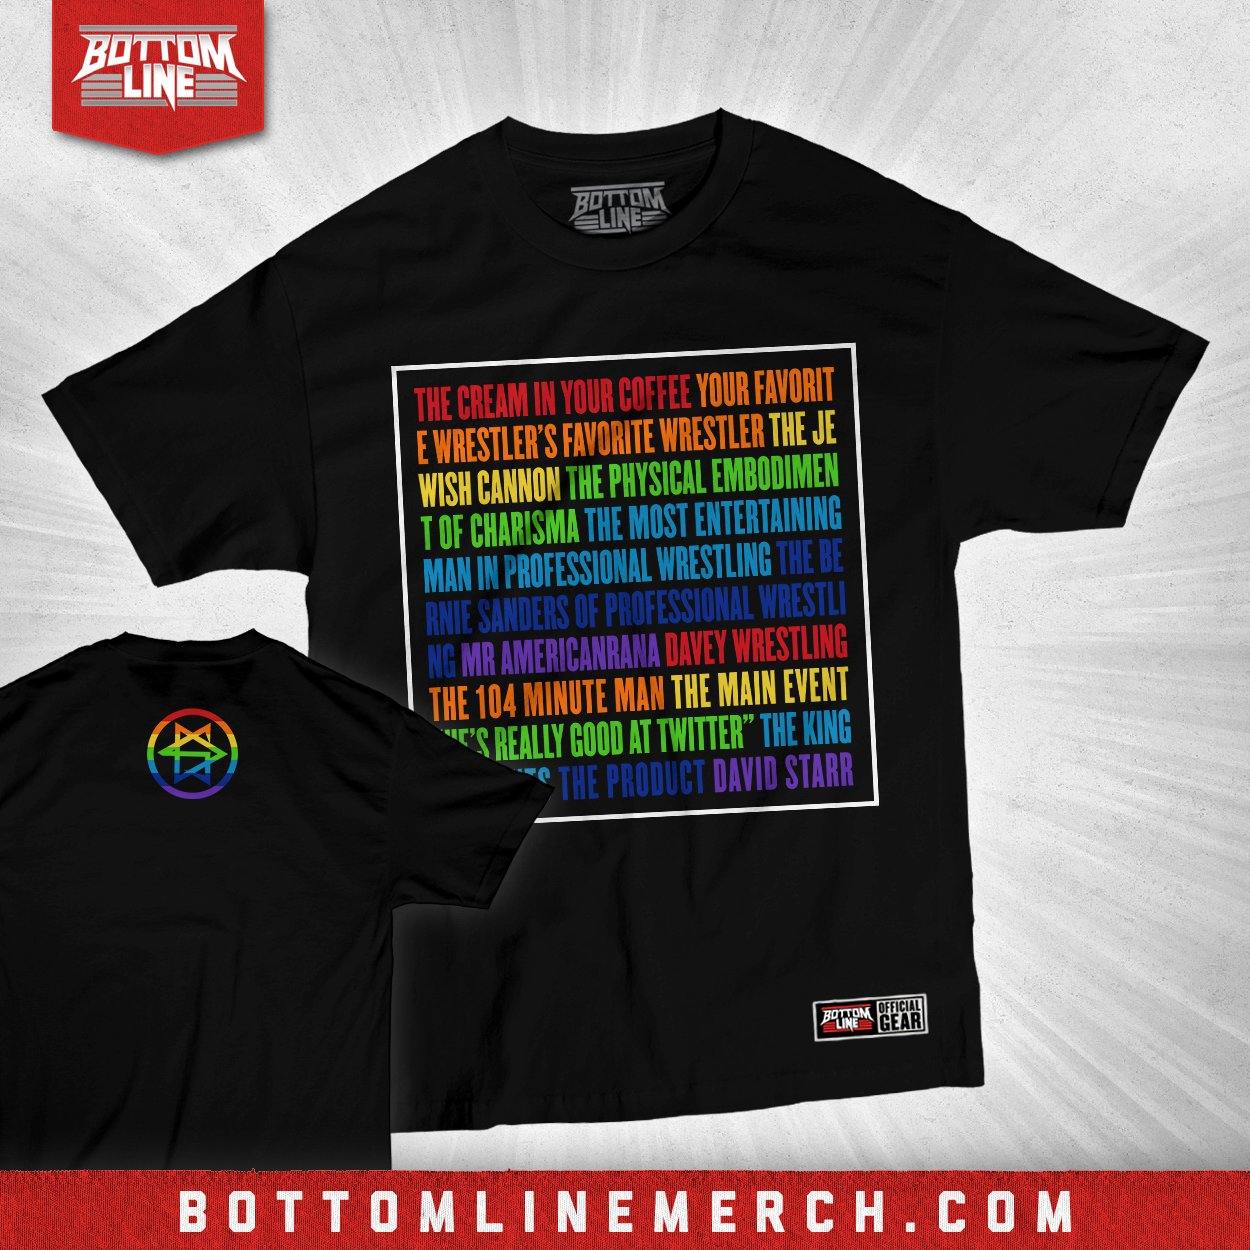 Buy Now – David Starr "Rainbow Square" Shirt – Wrestler & Wrestling Merch – Bottom Line